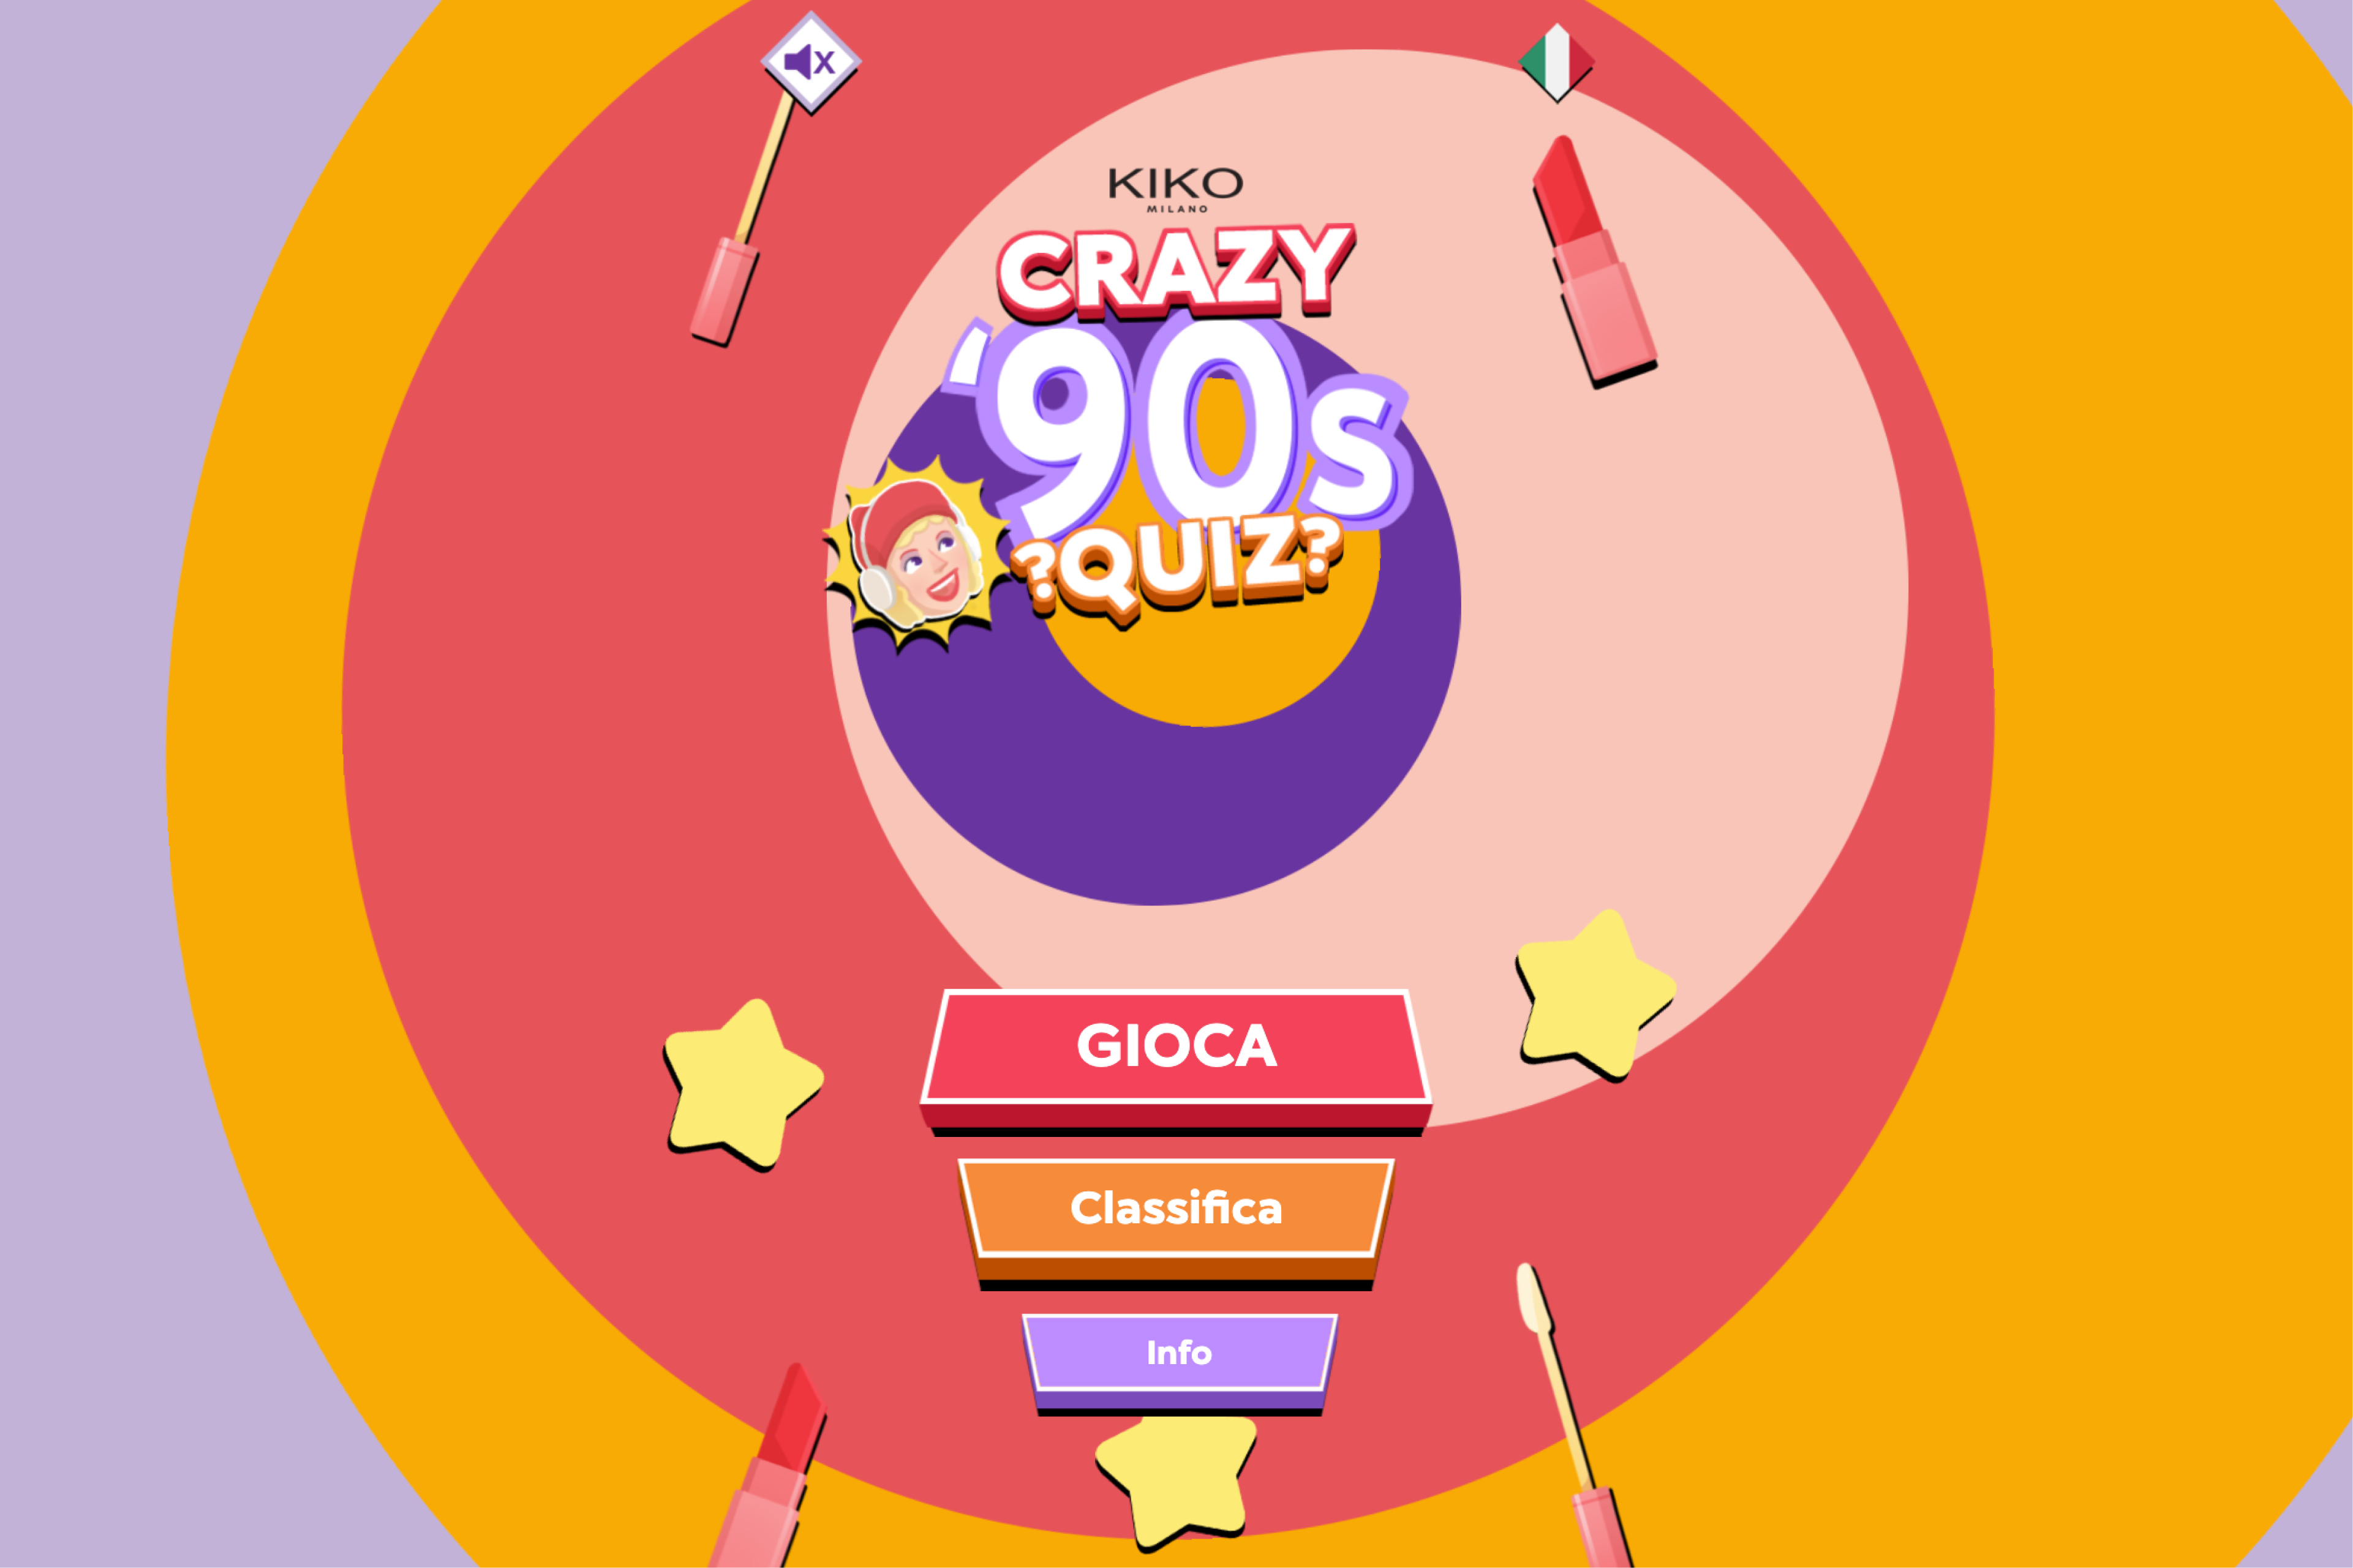 Crazy ’90s Quiz: un gioco per la nuova collezione di KIKO